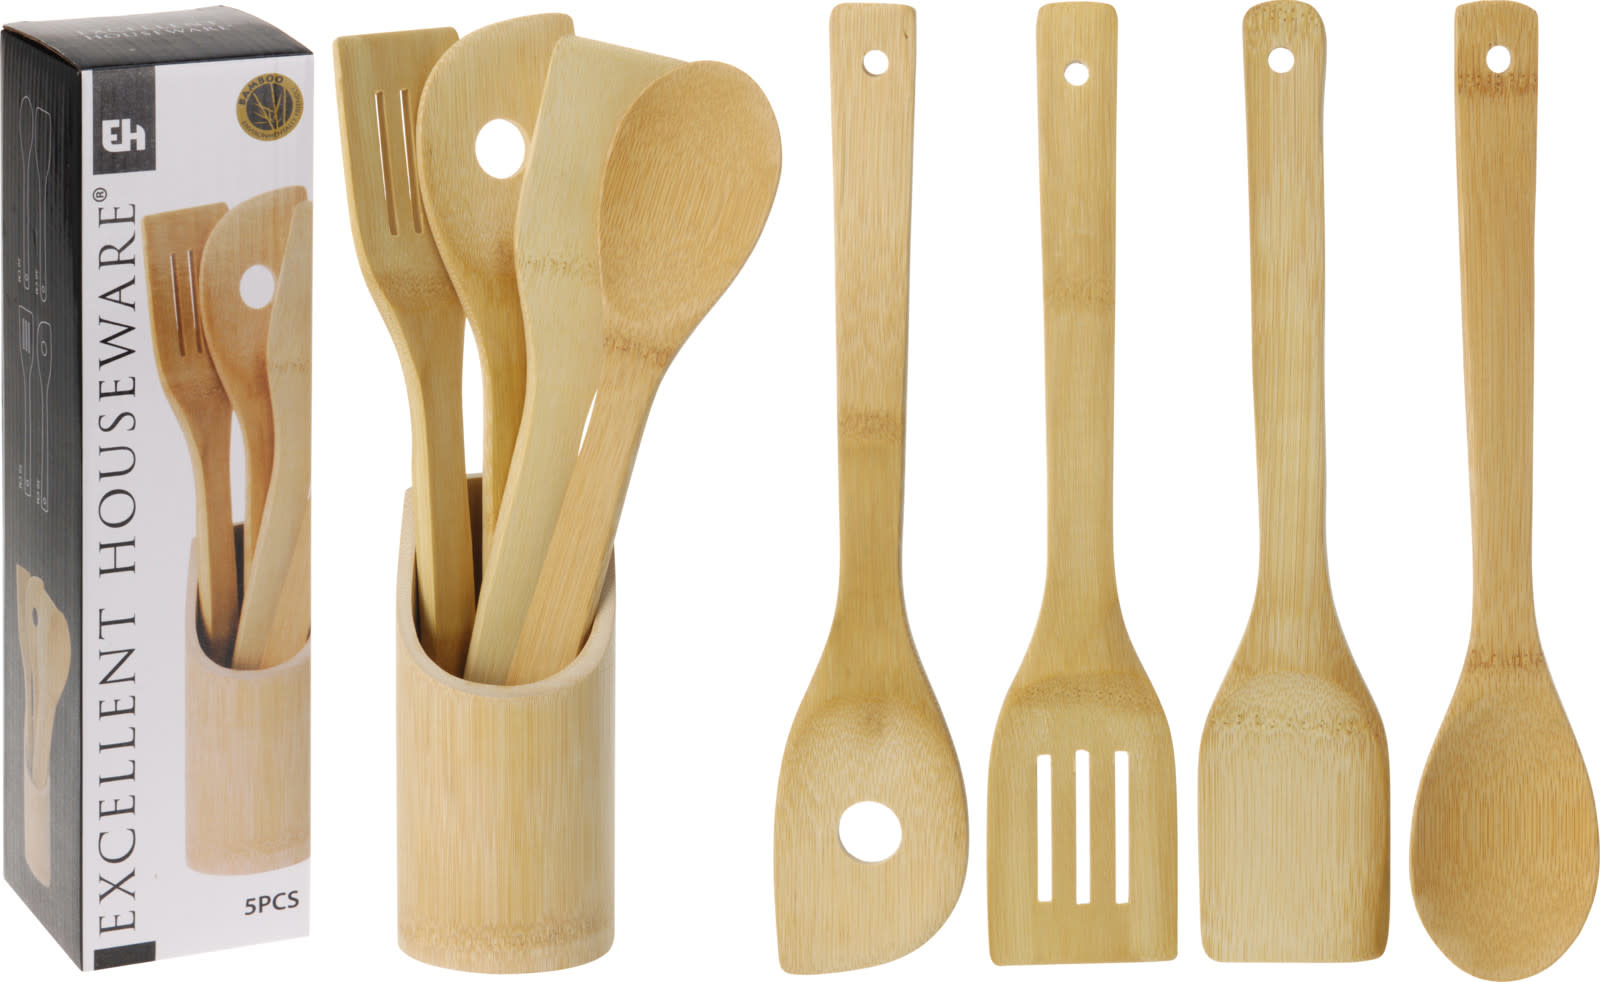 Koopman Kitchen utensils bamboo 5pc